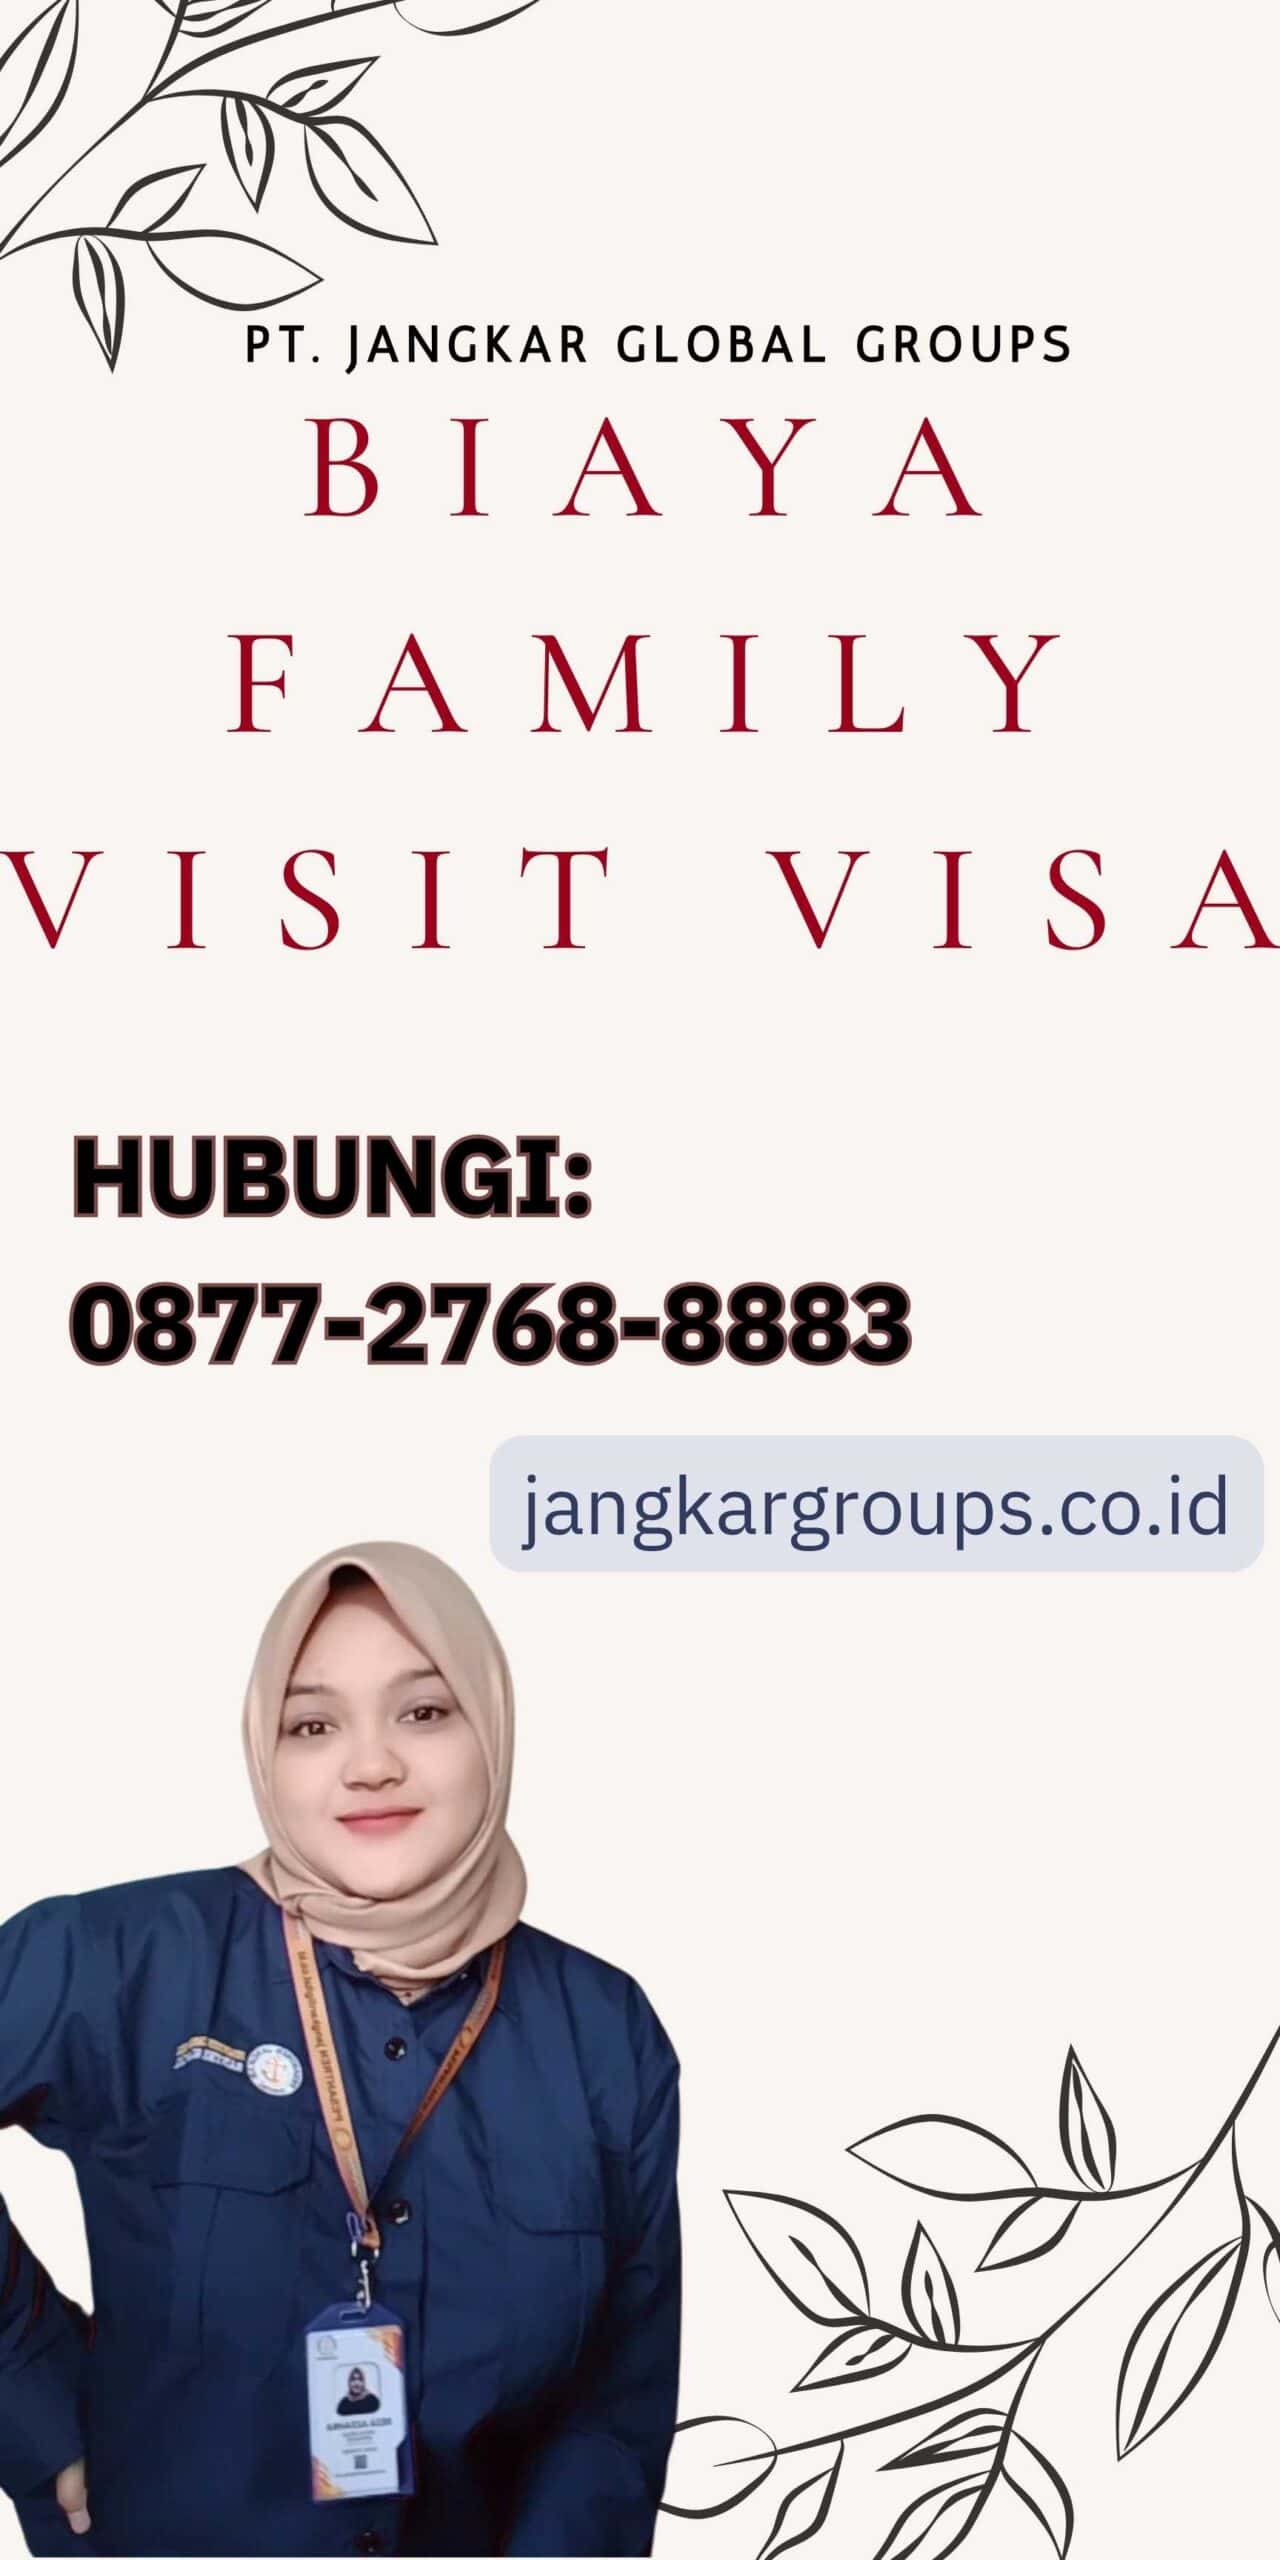 Biaya Family Visit Visa